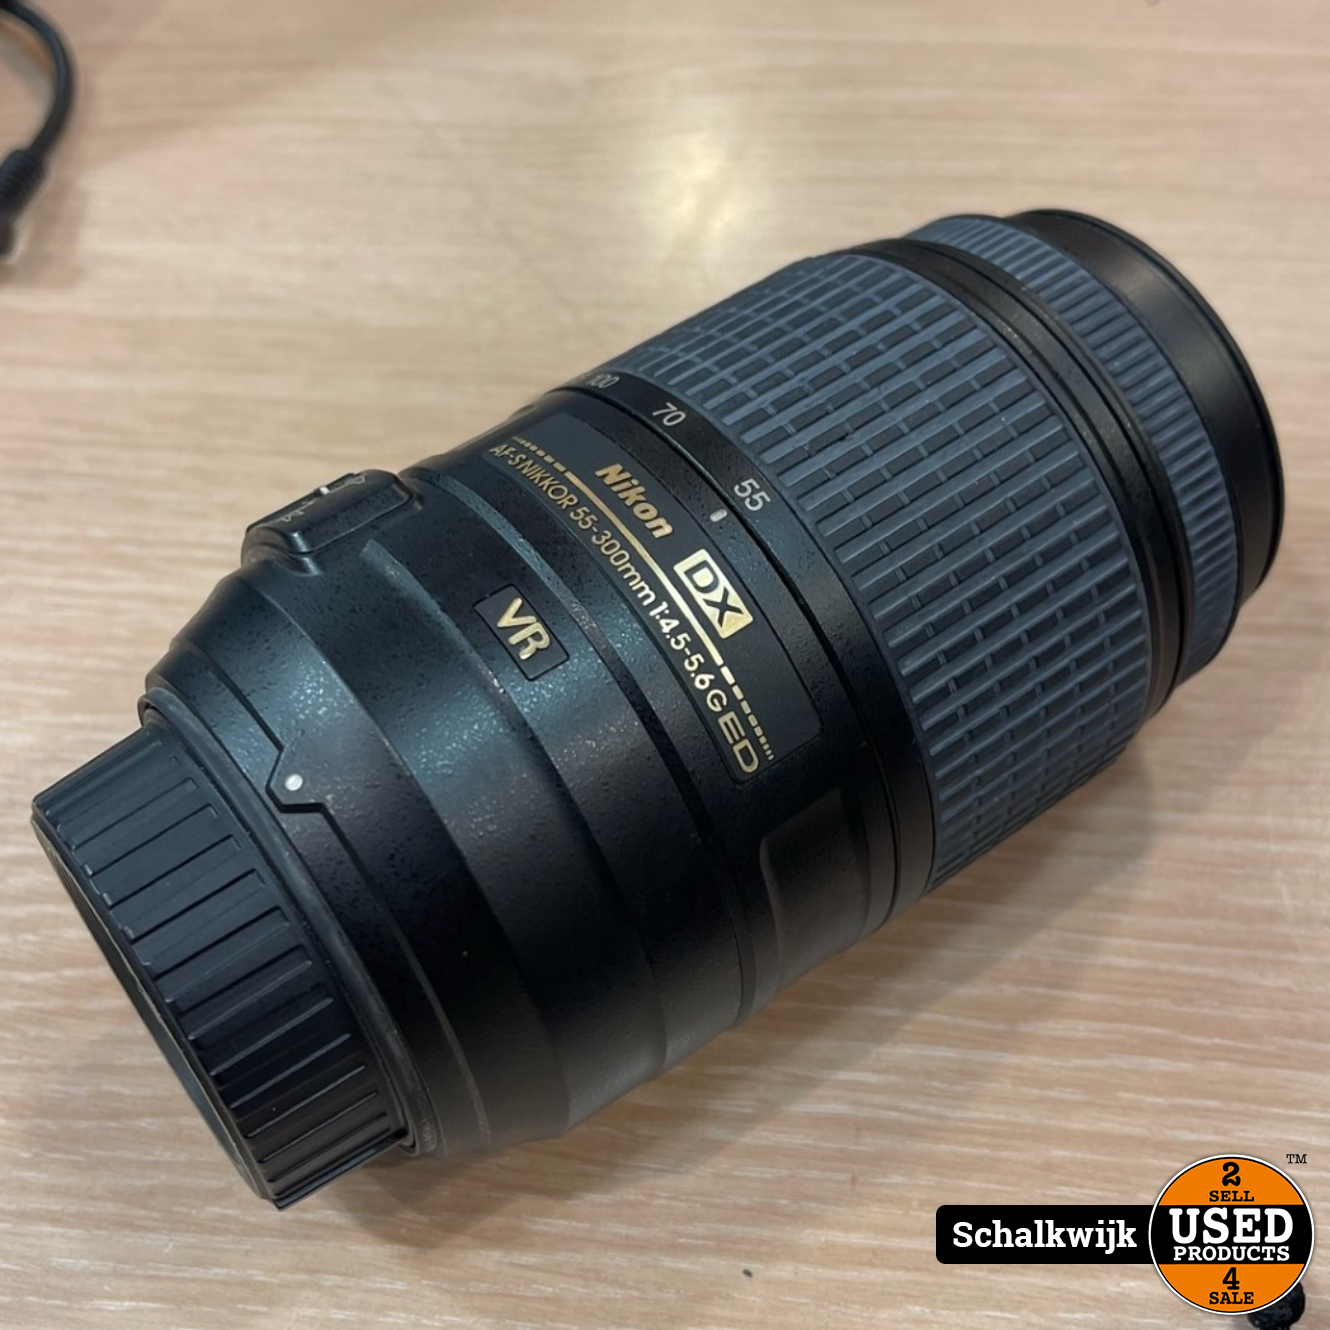 Nikon AF-S Nikkor DX 55-300Mm F4.5-5.6 G ED VR Lens in nette staat